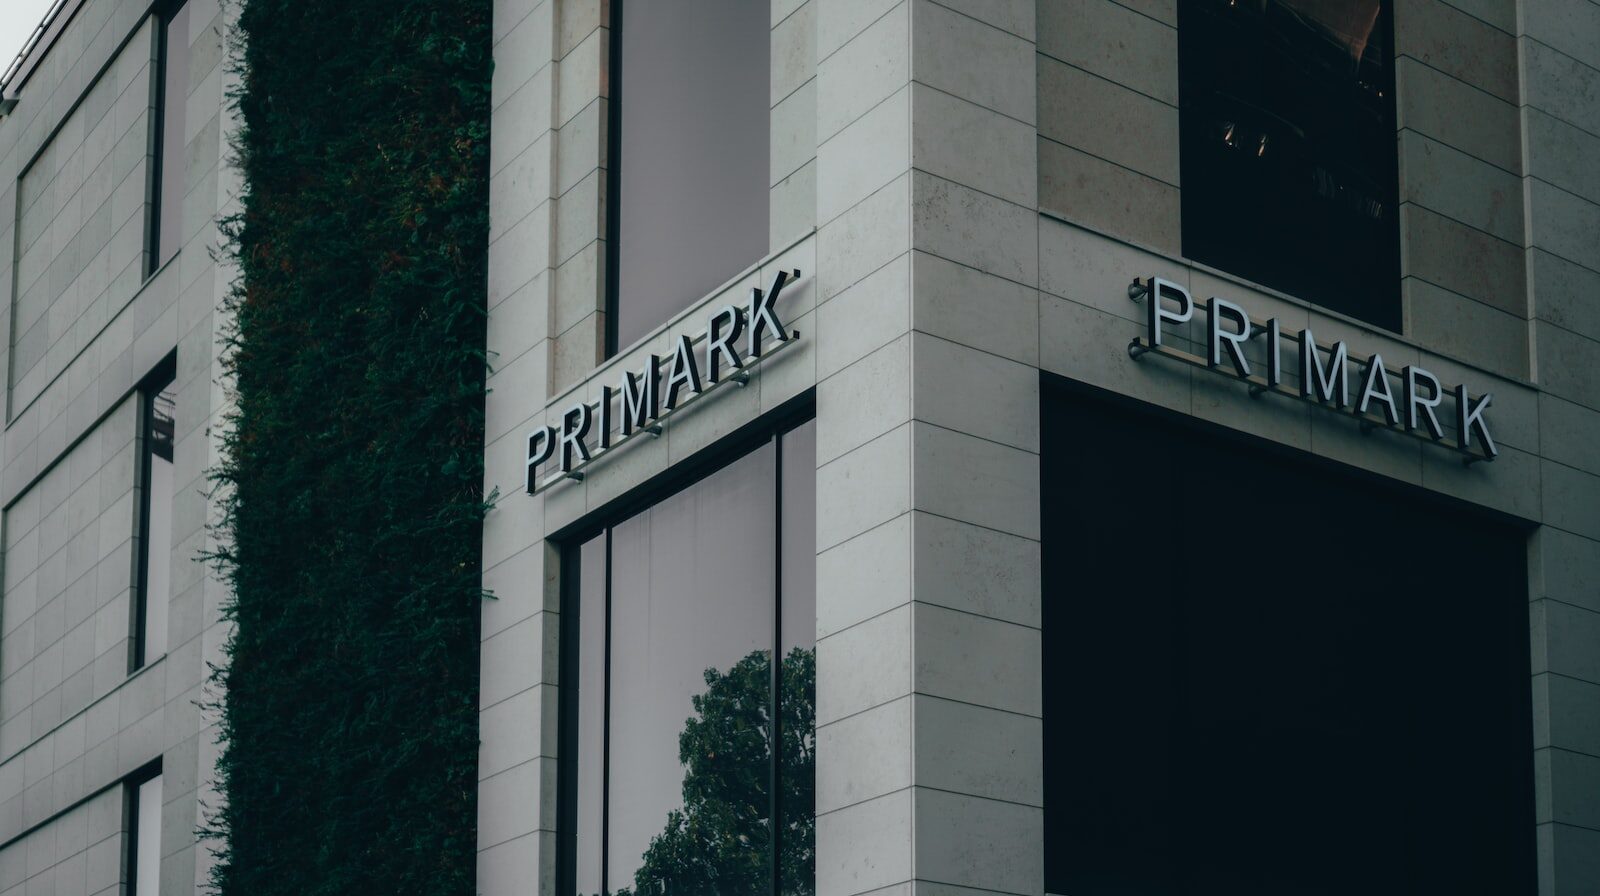 Edificio con logo Primark